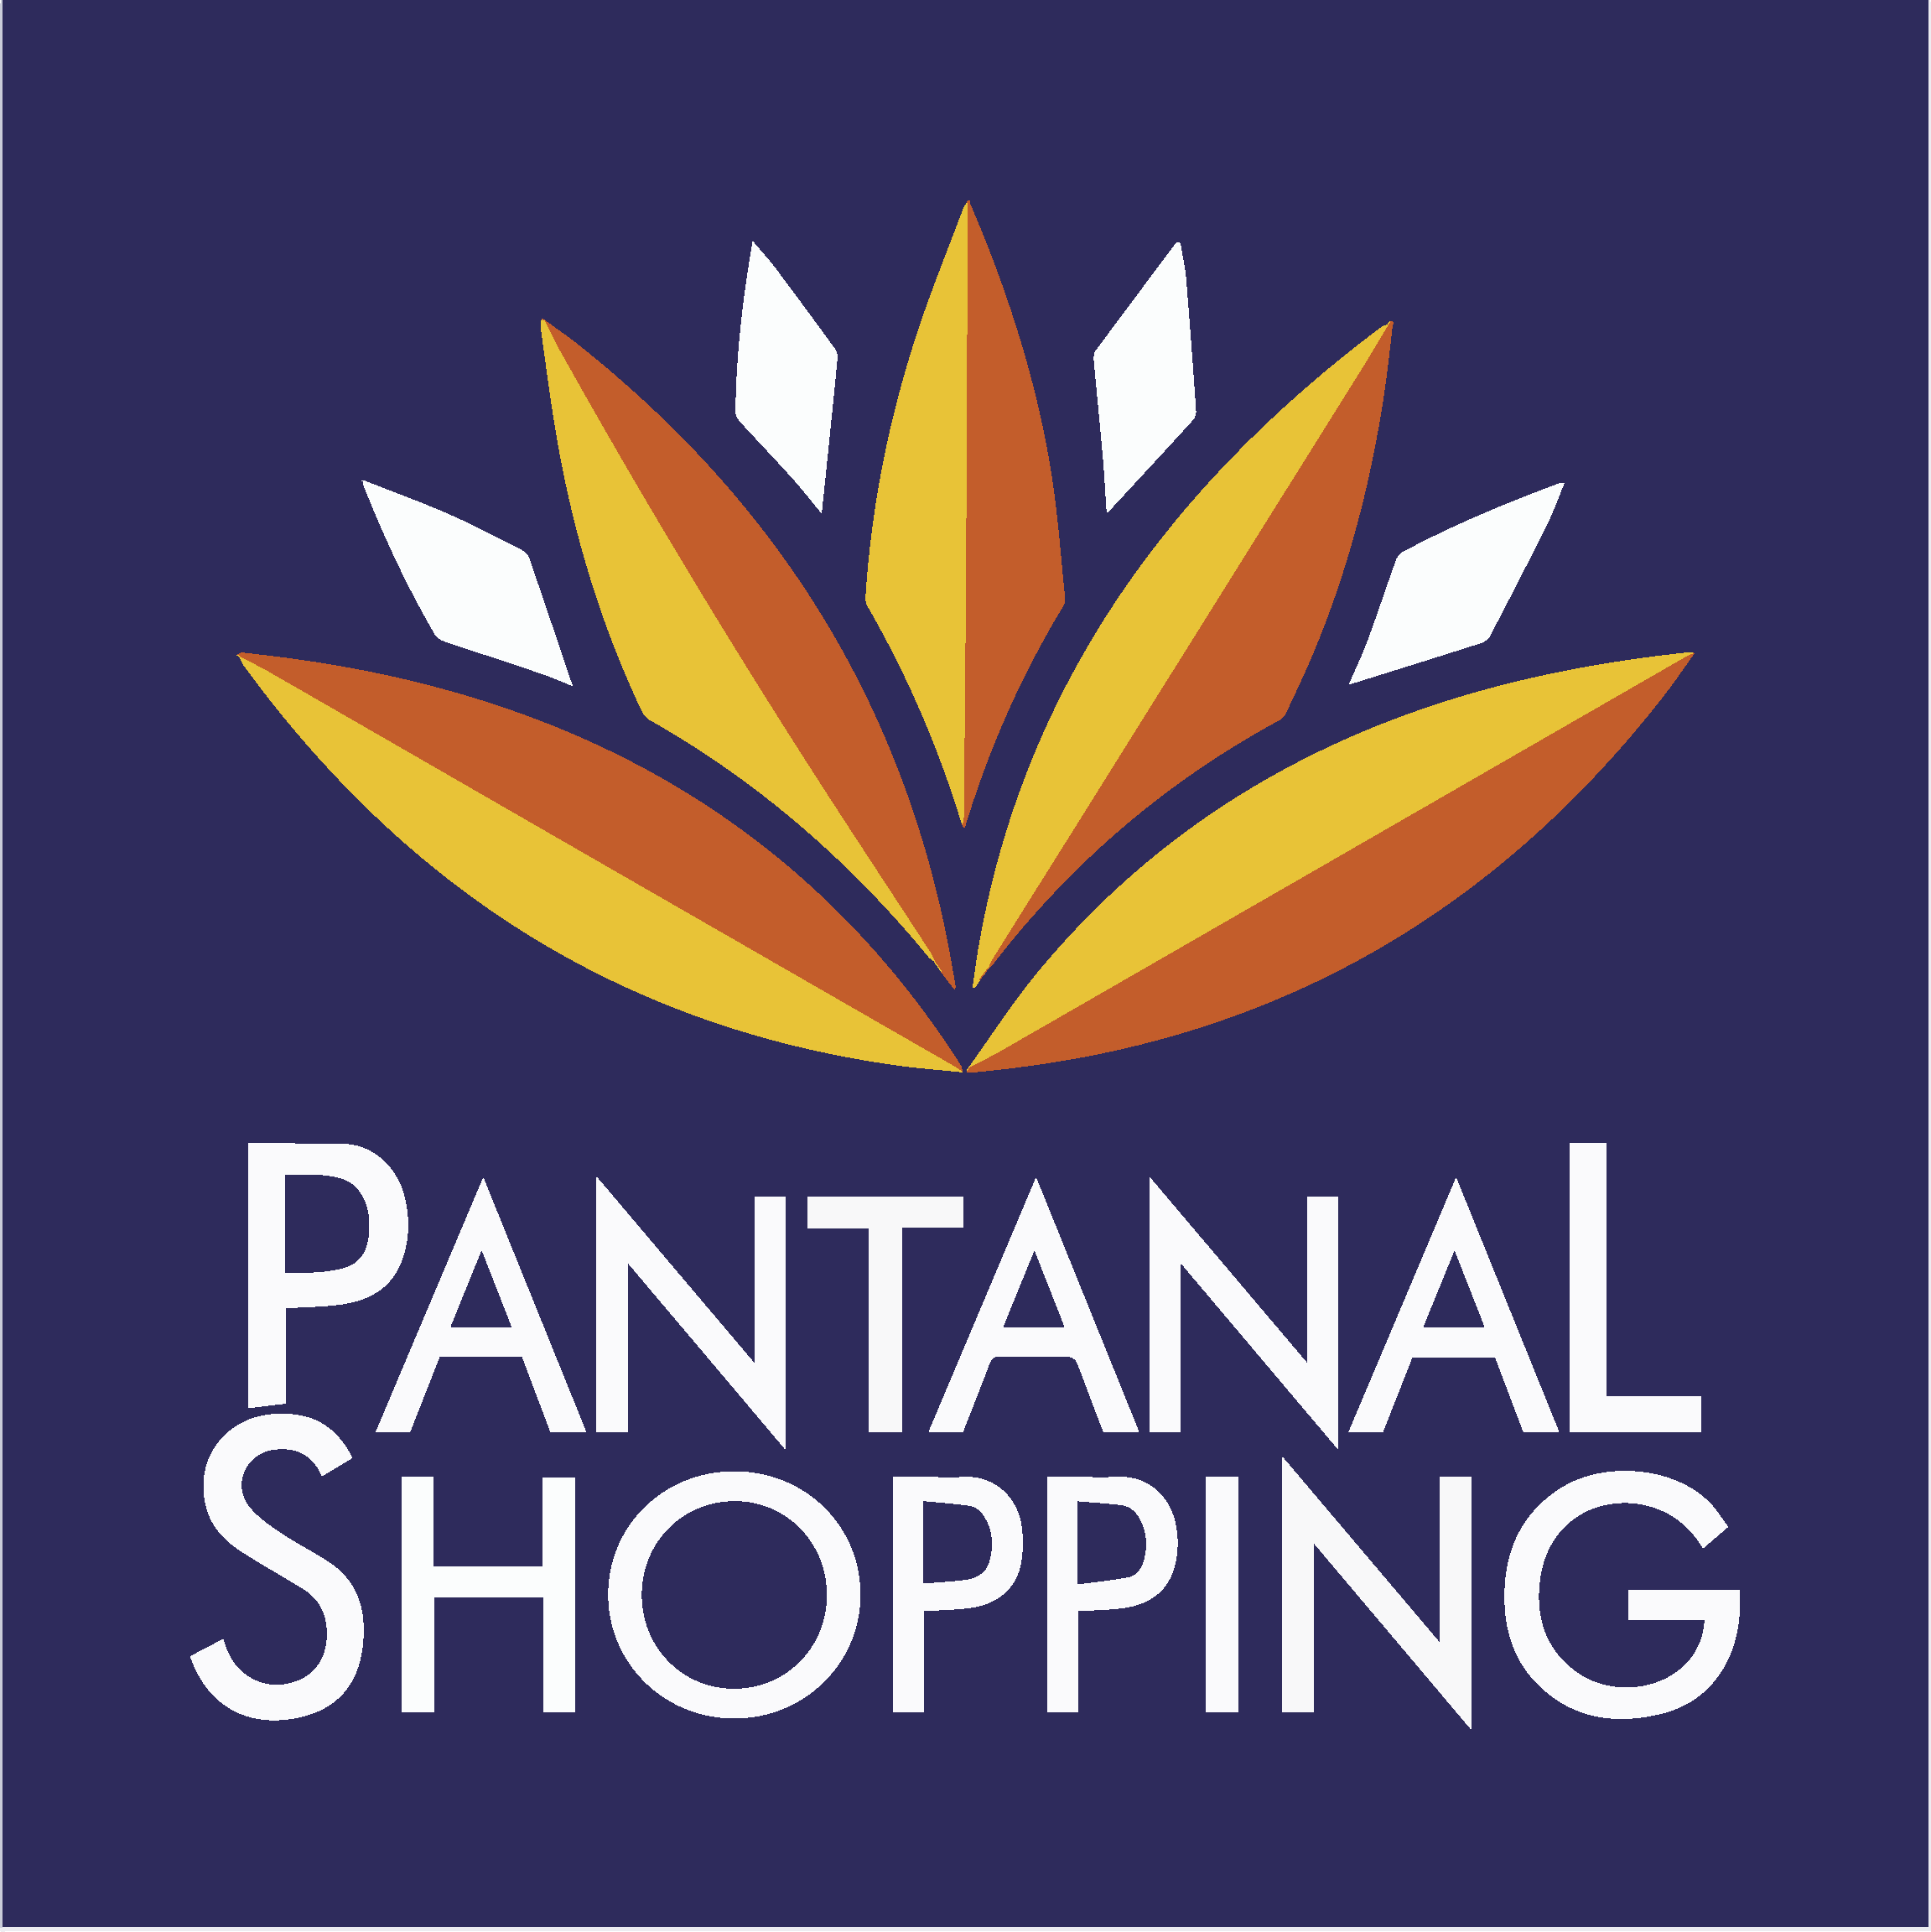 Pantanal Shopping